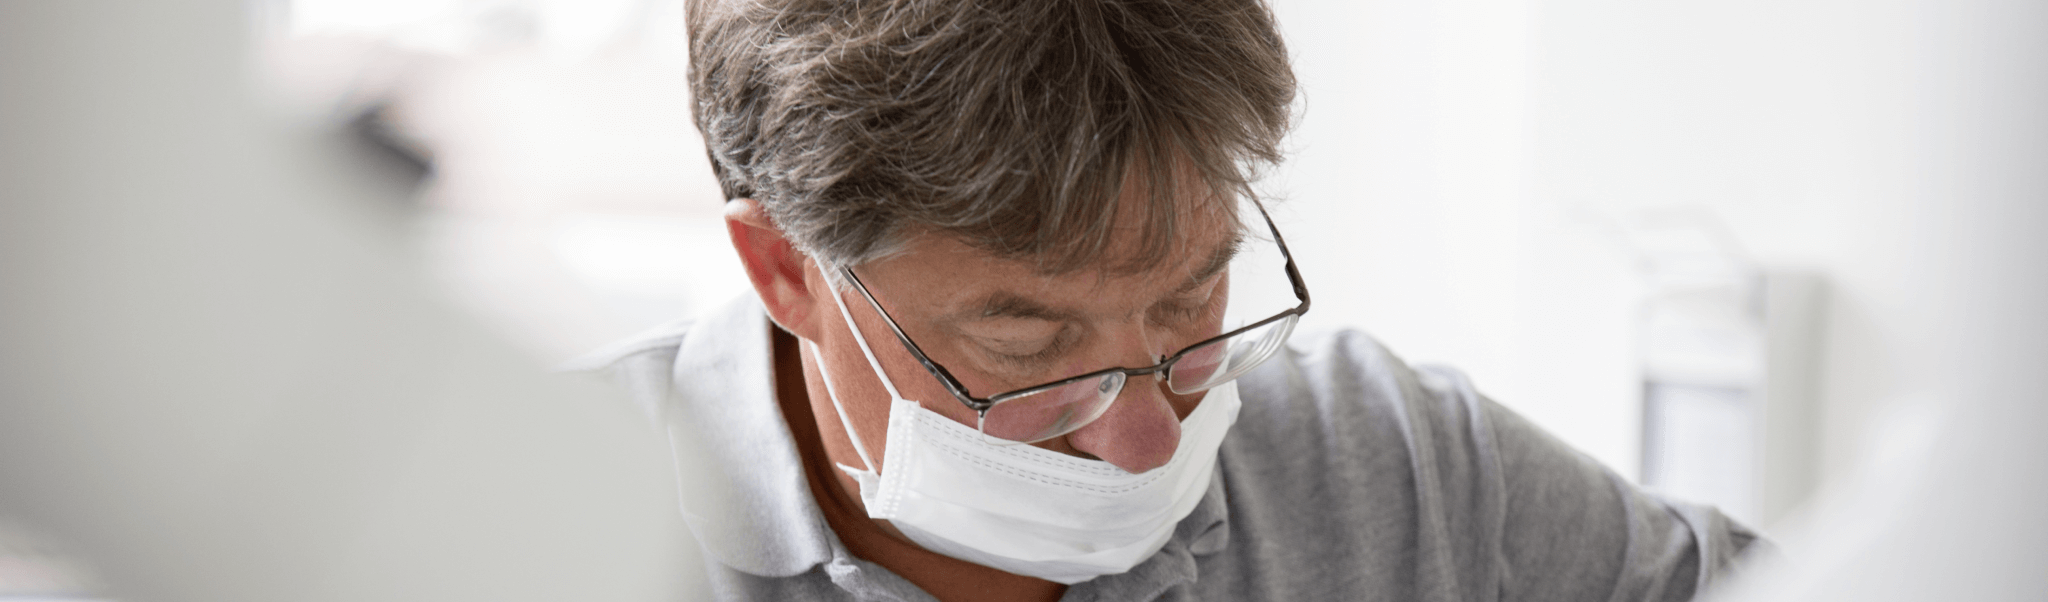 Parodontitisbehandlung - Dr. Rentschler während einer Parodontitisbehandlung